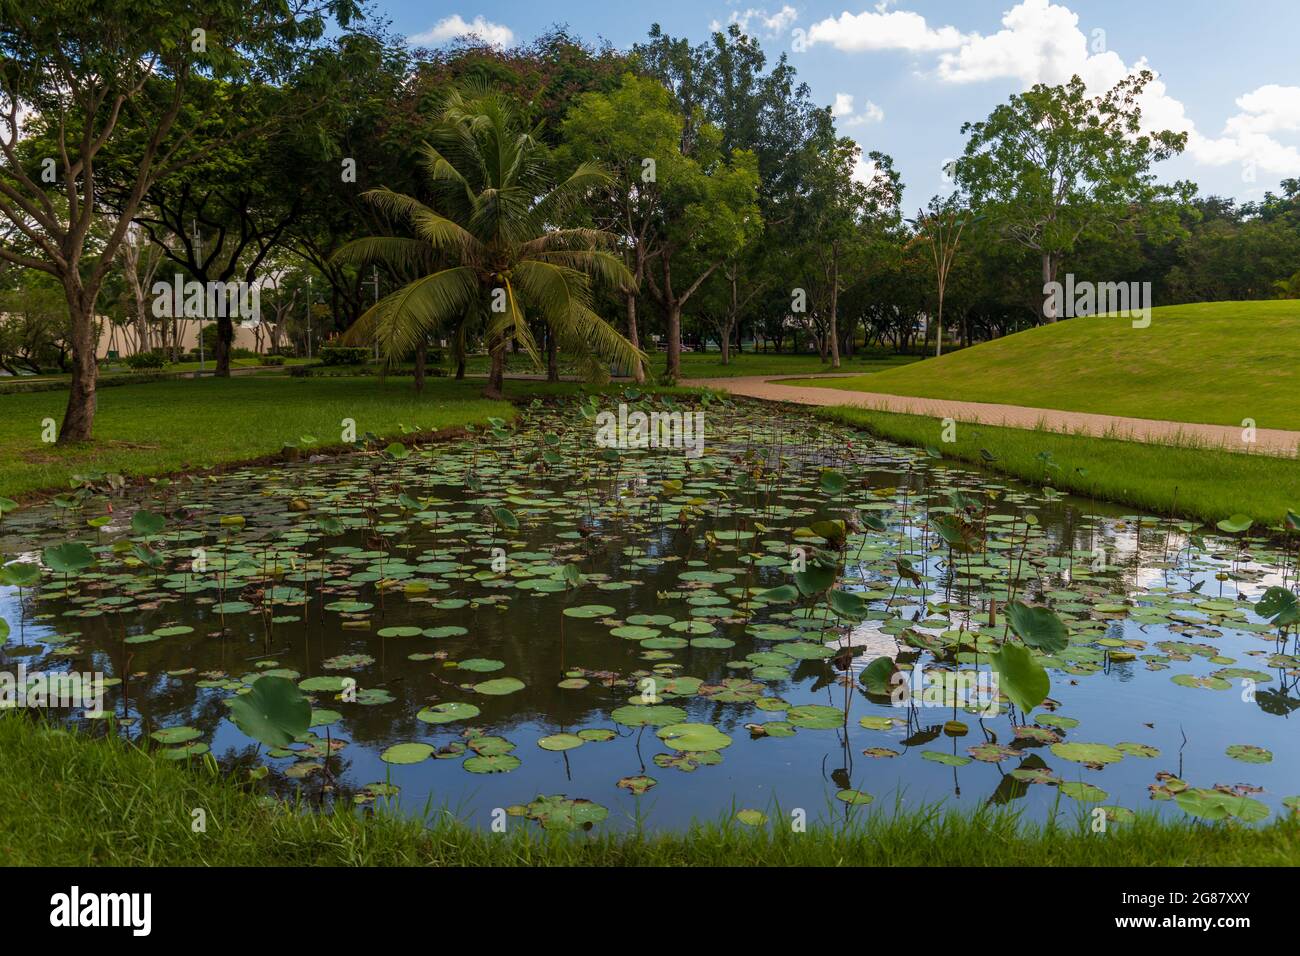 Une belle photo d'un étang avec des nénuphars au milieu d'un parc au Vietnam Banque D'Images